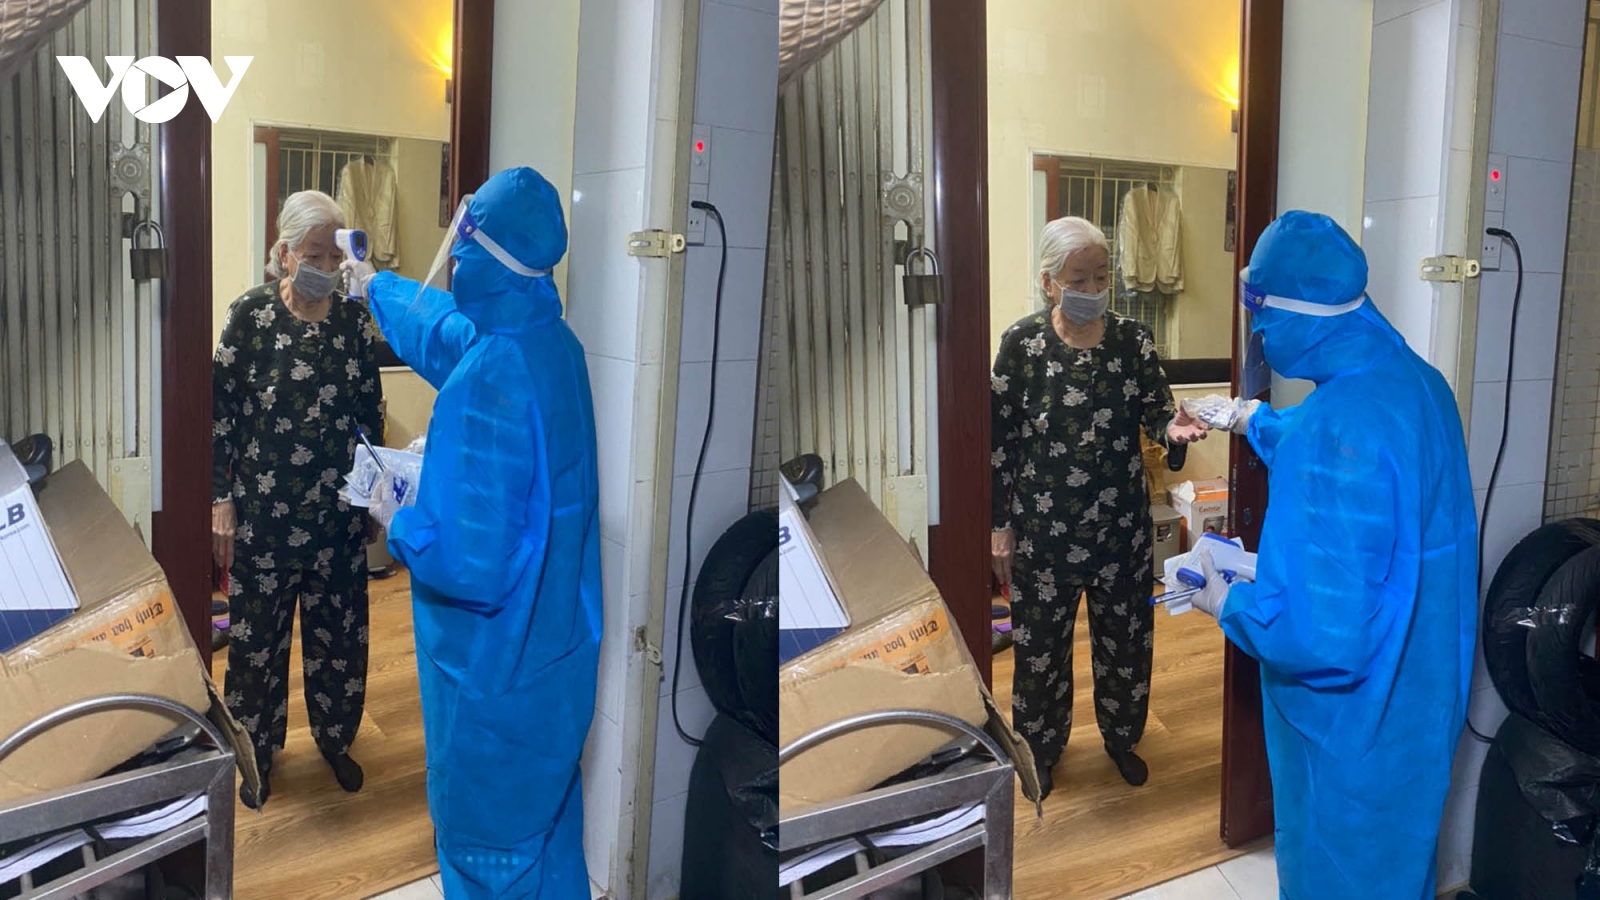 Trạm y tế lưu động tại Hà Nội góp phần giảm gánh nặng cho các cơ sở điều trị Covid-19